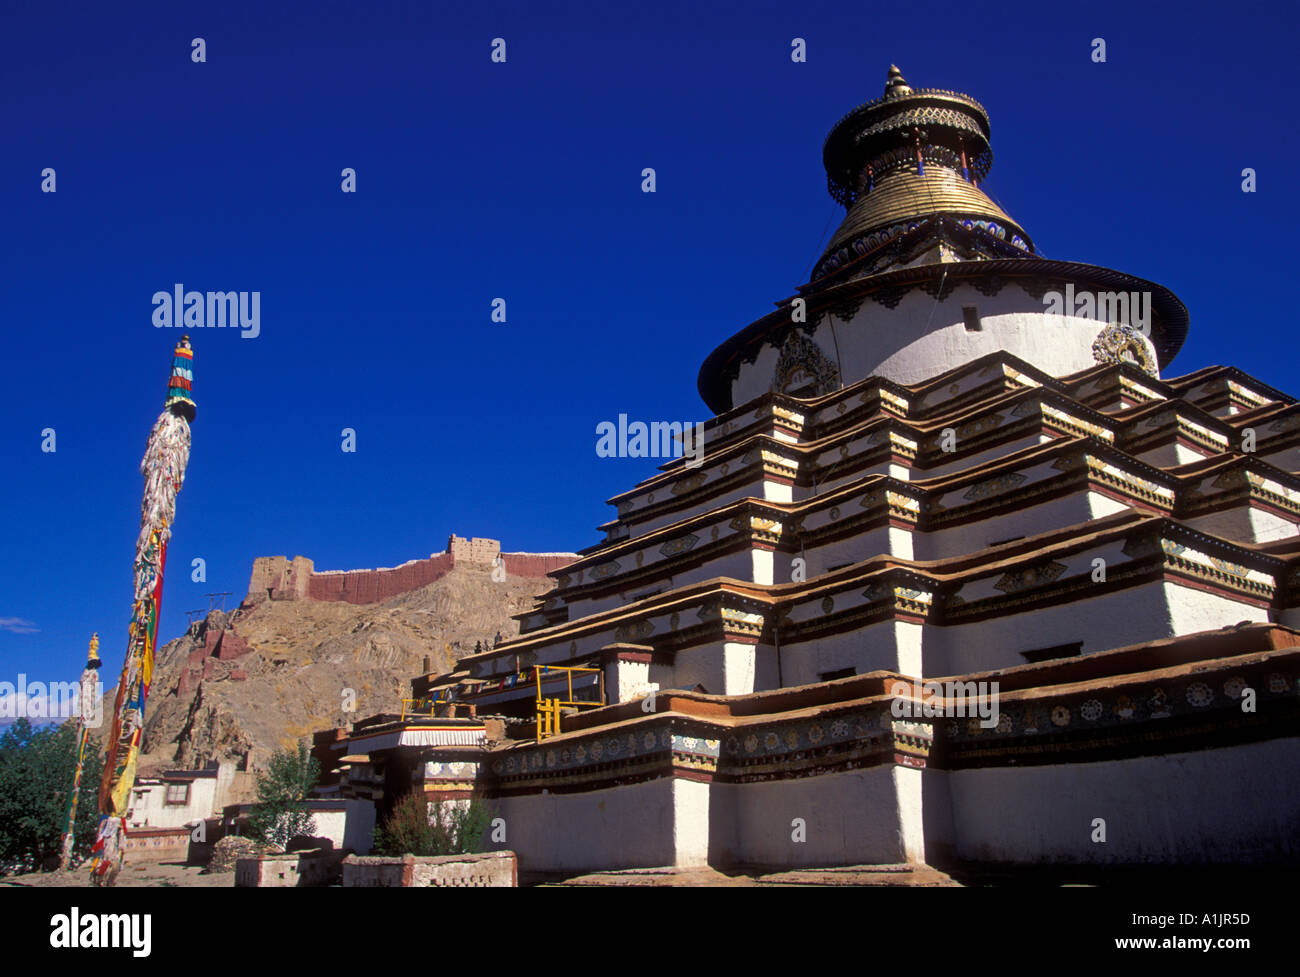 kumbum, chorten, Pelkor Chode Monastery, Buddhism, Buddhist monastery, Buddhist temple, temple, town of Gyantse, Tibet Autonomous Region, China, Asia Stock Photo